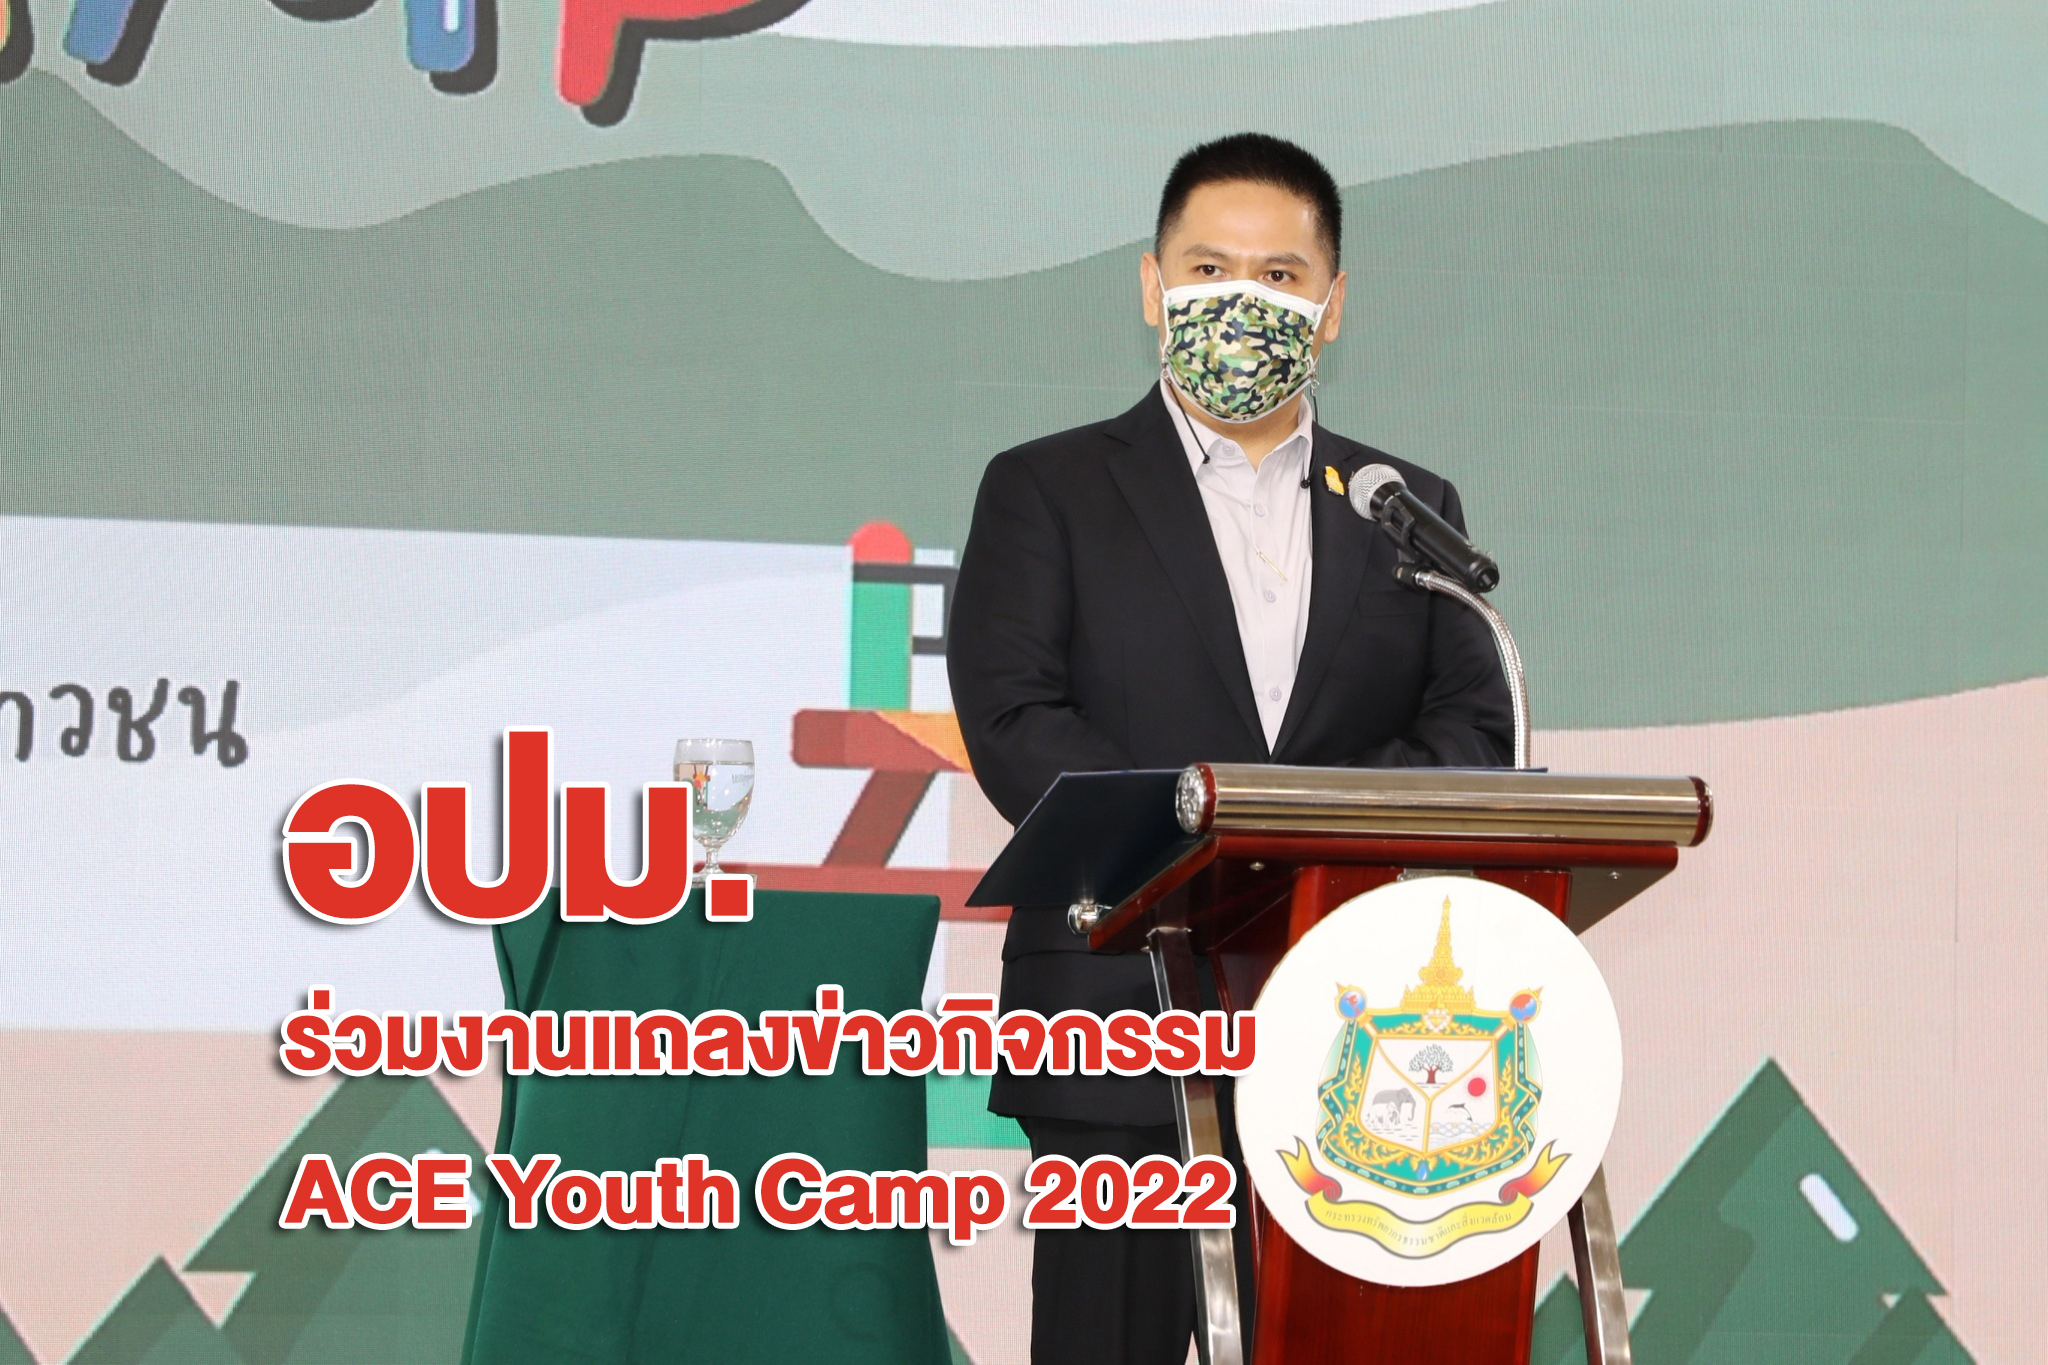 นายสุรชัย อจลบุญ อธิบดีกรมป่าไม้ร่วมงานแถลงข่าวกิจกรรม ACE Youth Camp 2022